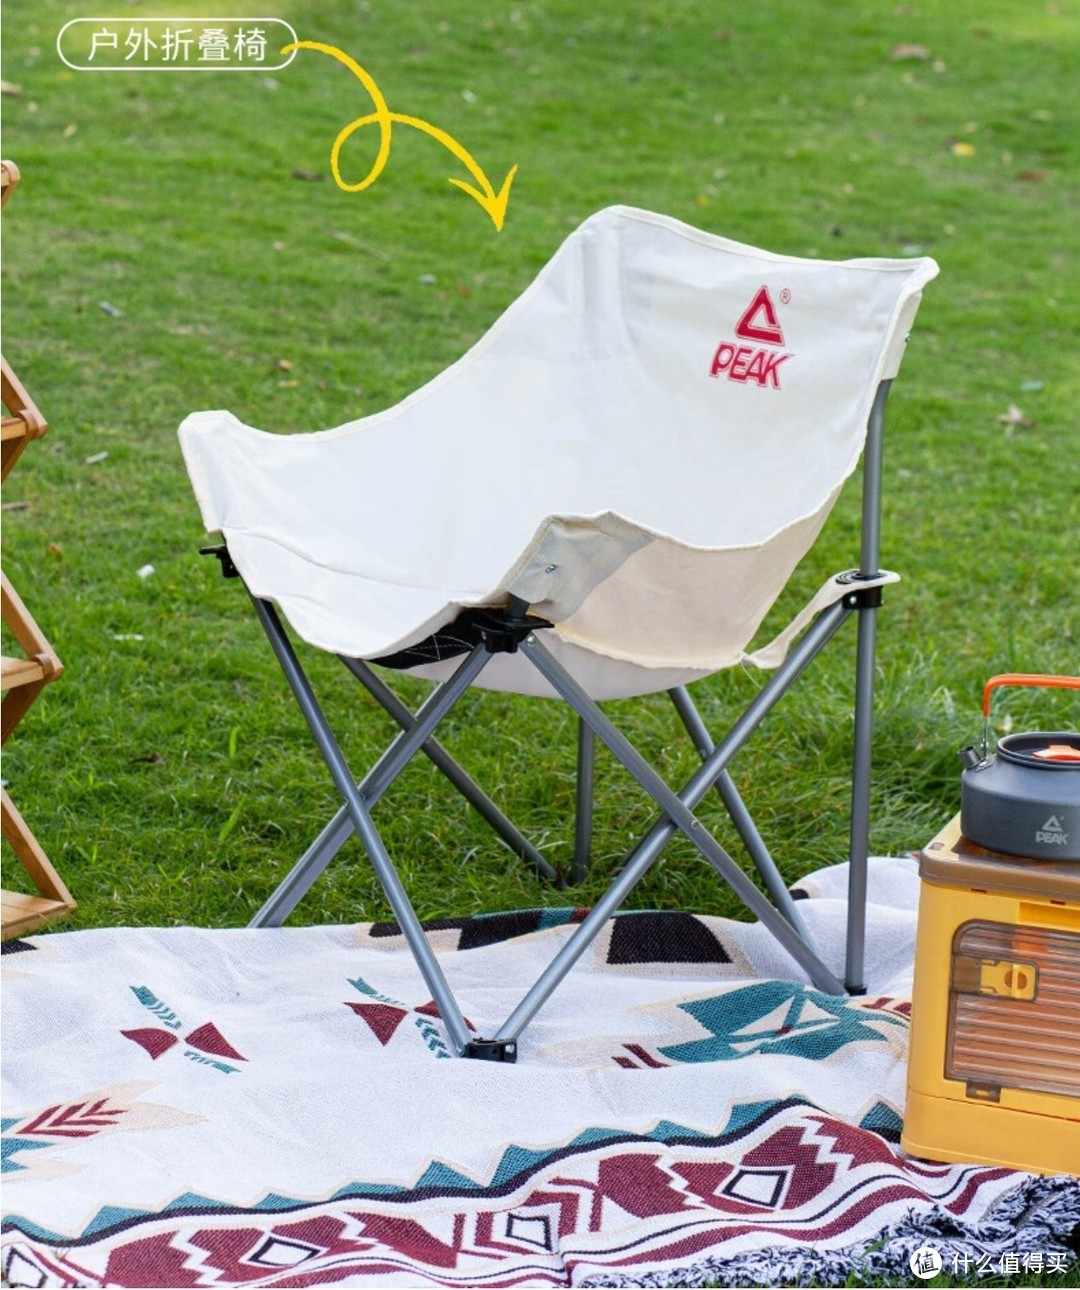 仅限3天 限时40元 匹克户外折叠椅 月亮椅 公园写生椅休闲钓鱼露营野营游玩椅子